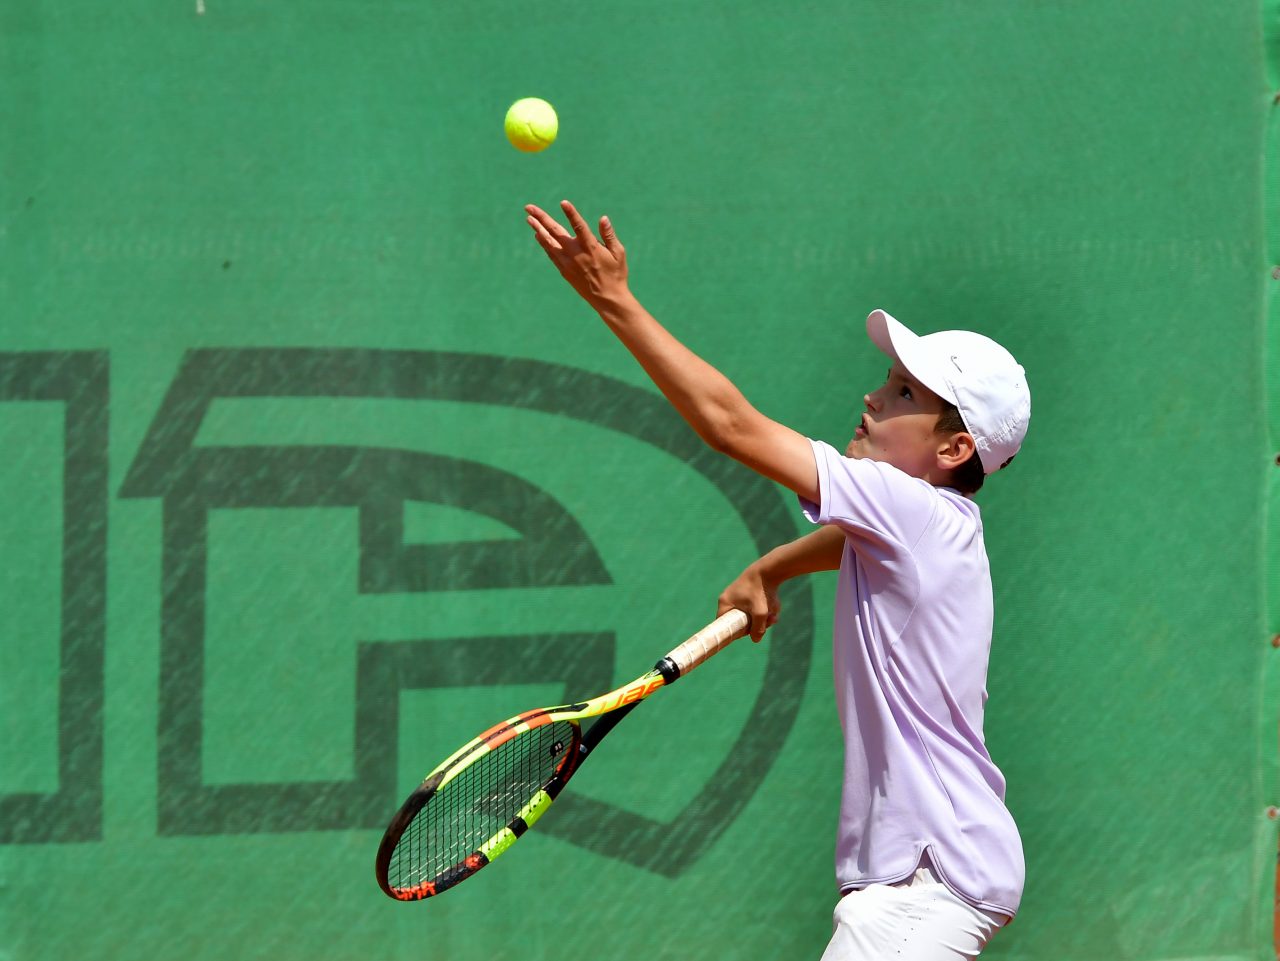 Държавно-лично-първенство-тенис-до-12-години-1-1280x961.jpg